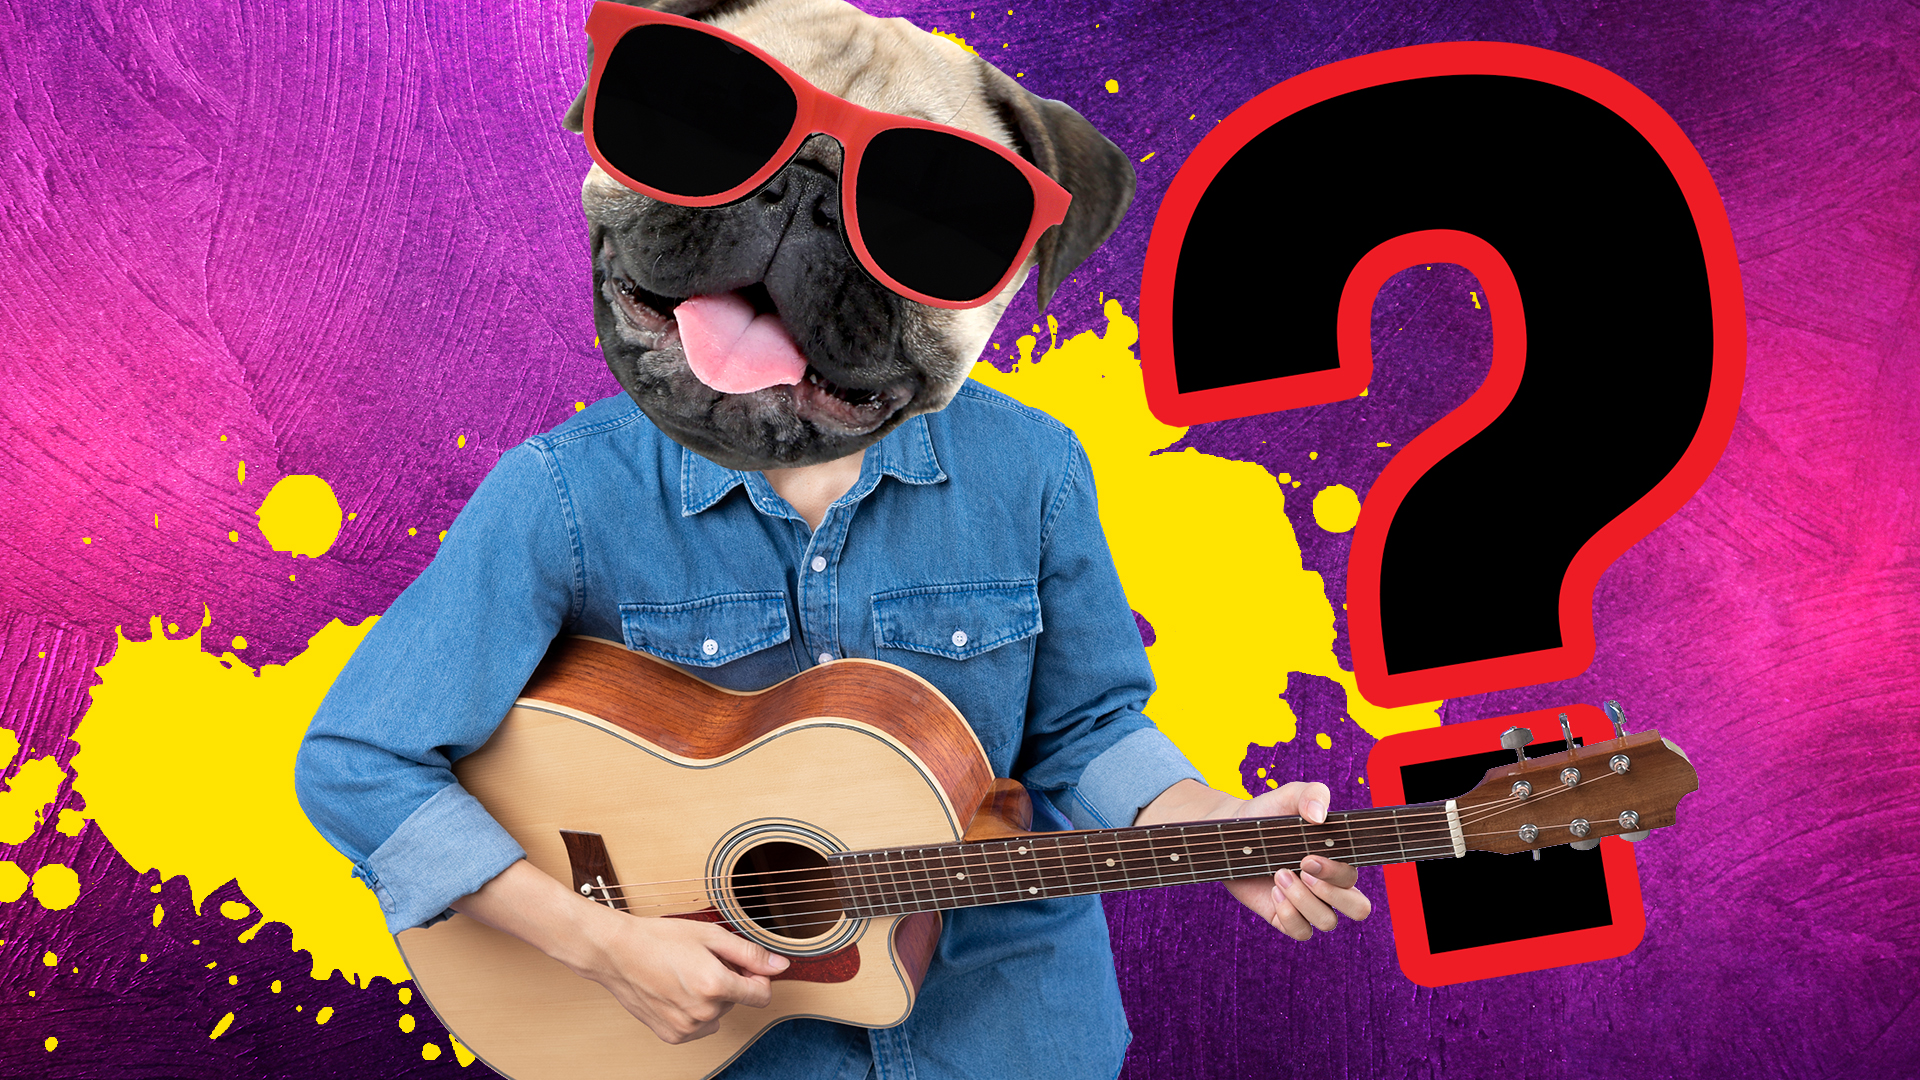 A dog man plays guitar